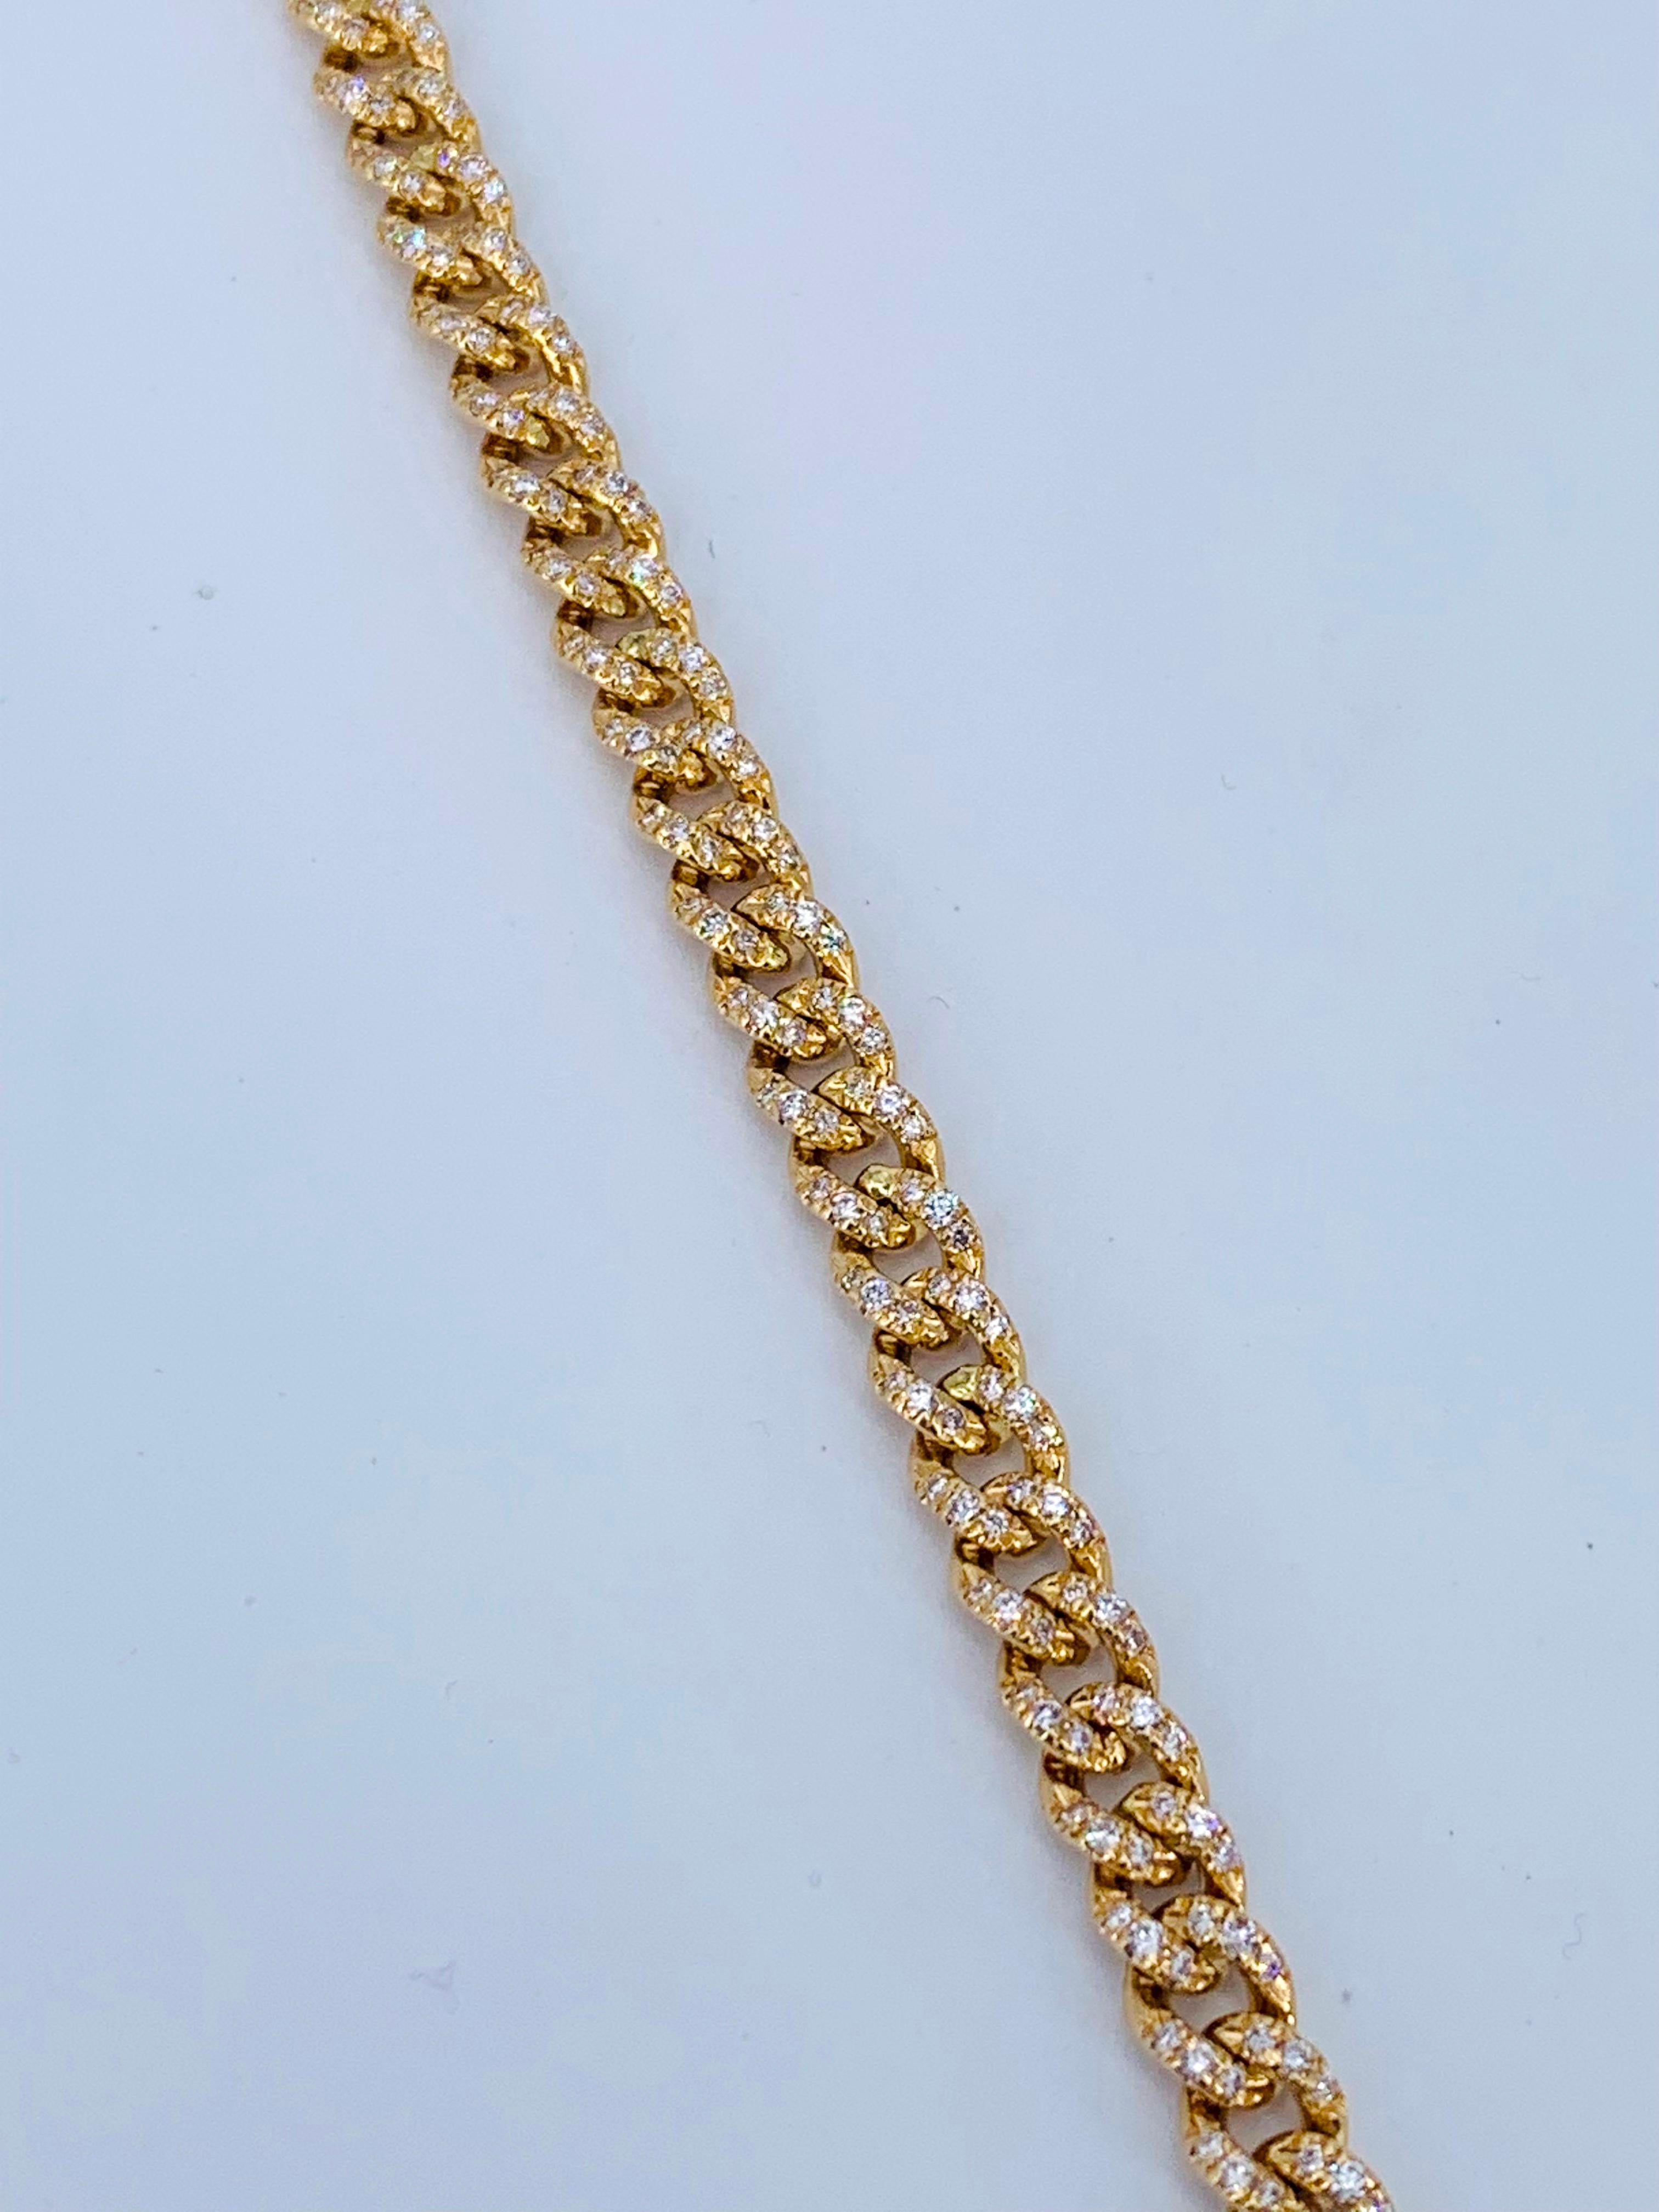 Dieses fabelhafte zertifizierte Gelbgold 2,31 Karat Diamant Groumette Tennis Armband ist unisex und fabelhaft an jedem Handgelenk. 

Vollständig mit 2,31 Karat Diamanten besetzt, was bedeutet, dass eine Seite der Gliederkette vollständig mit